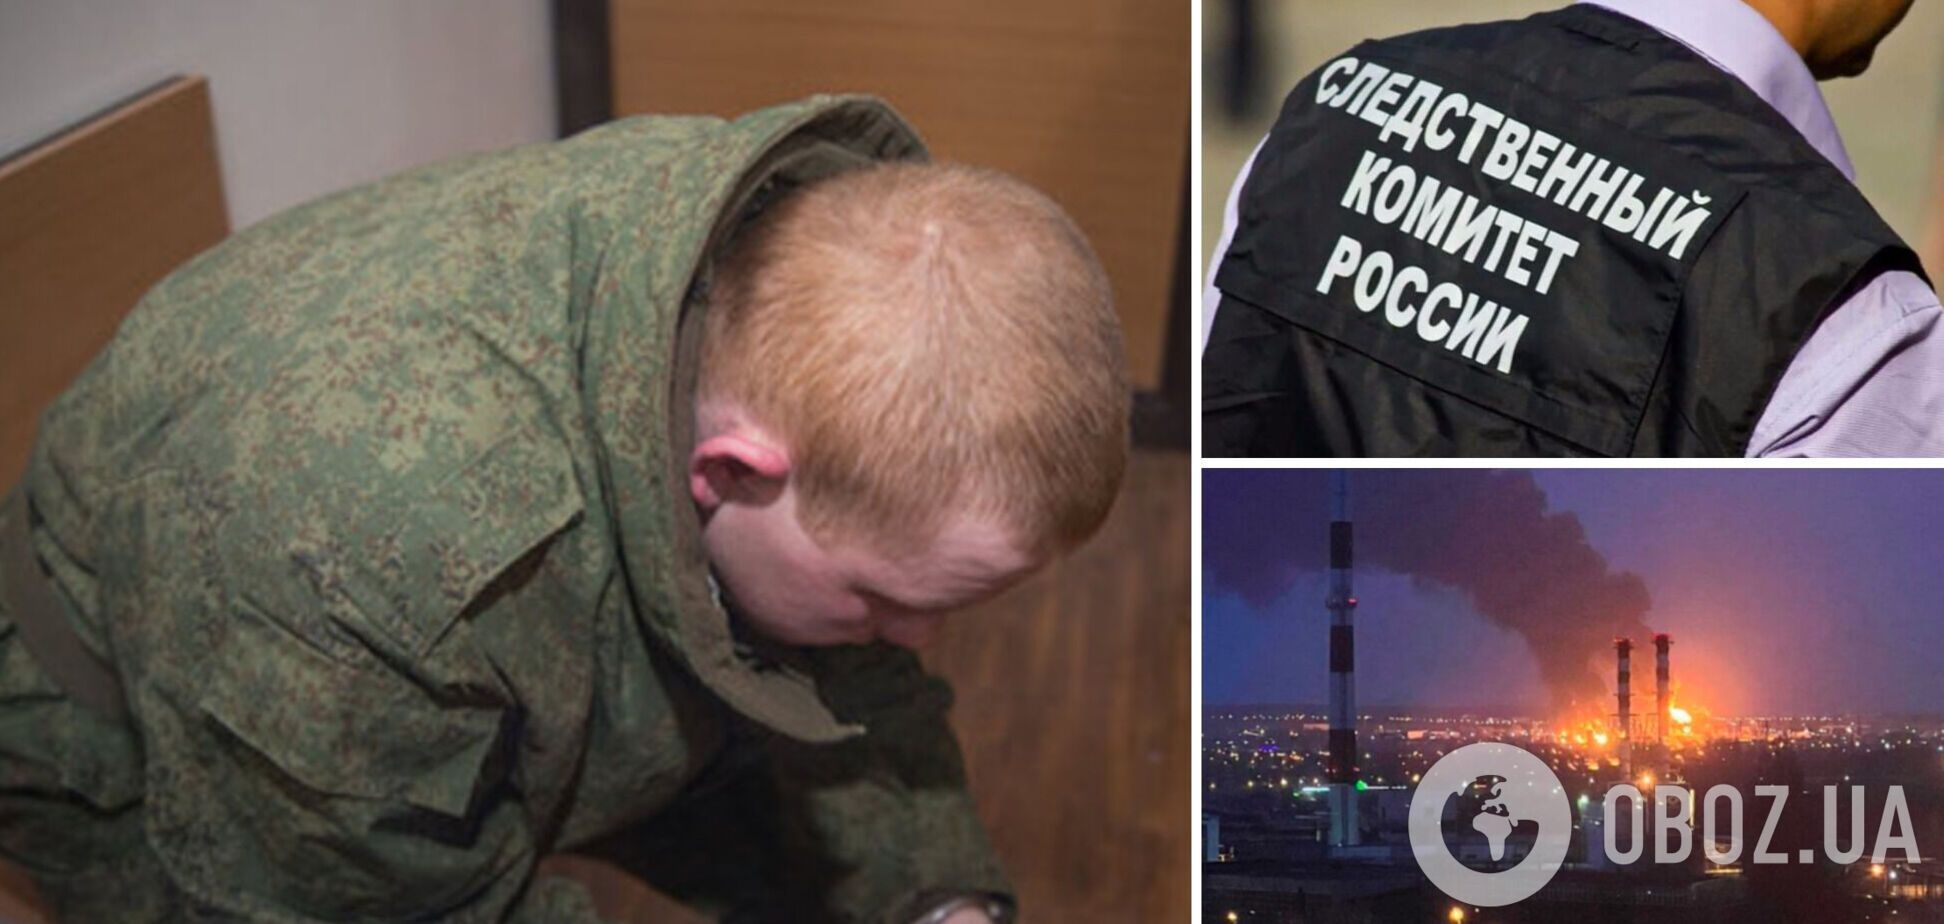 Минус 7 окупантов, десятки раненых и много уничтоженной техники: российского военного хотят судить за то, что не предотвратил нападение Украины на РФ